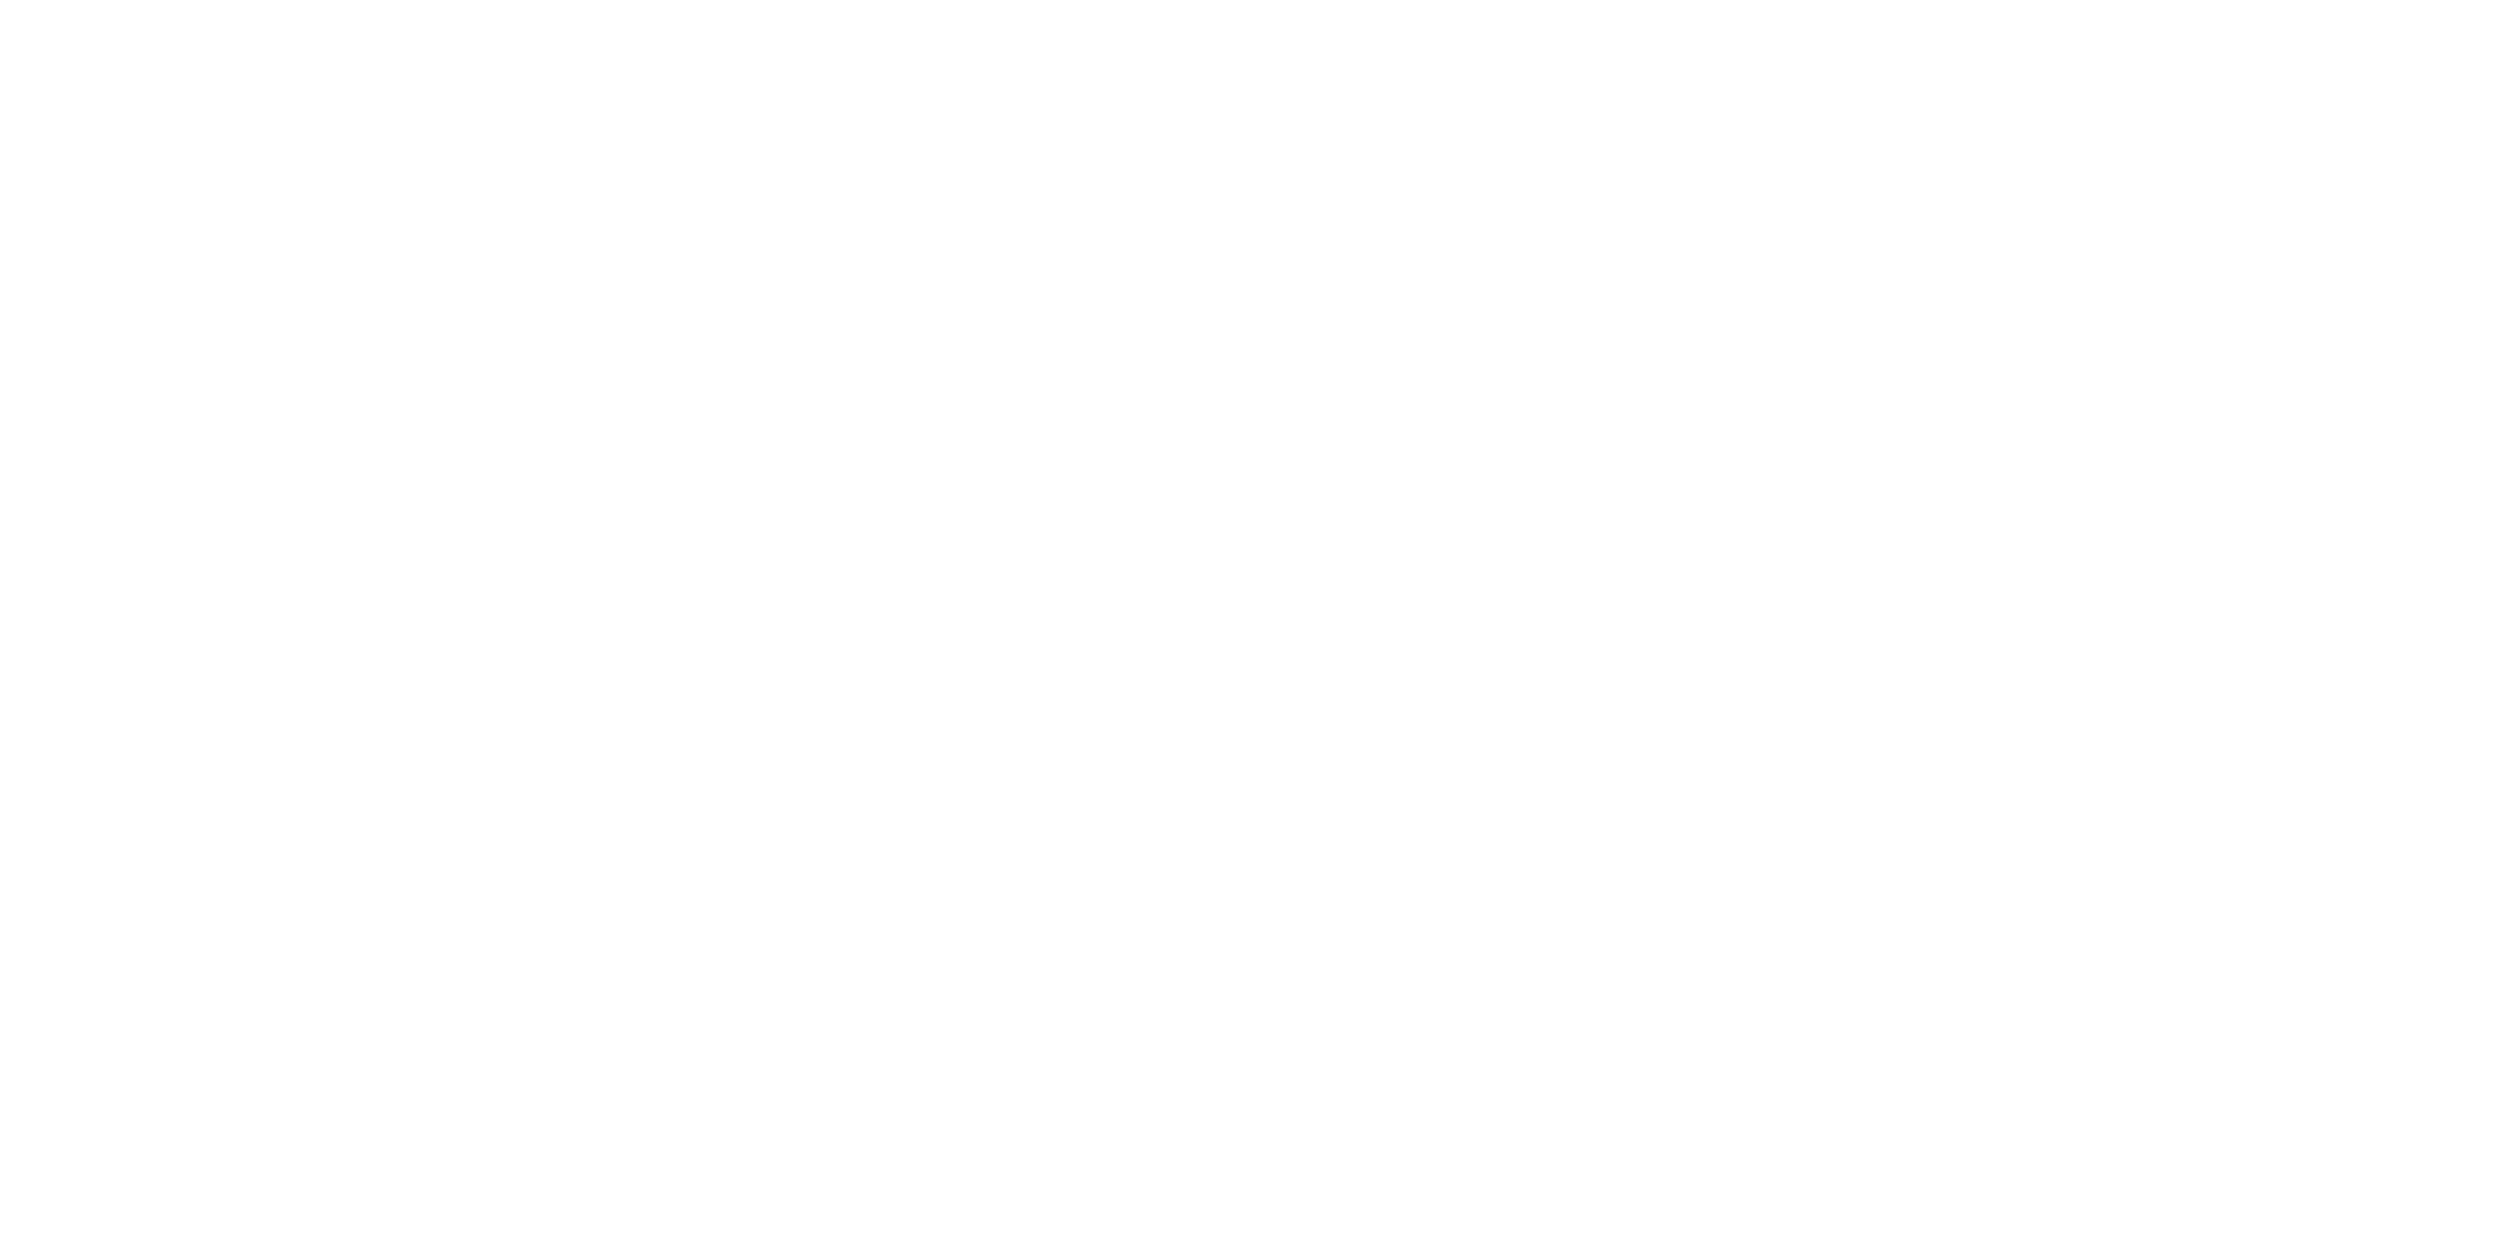 Madrona Construction